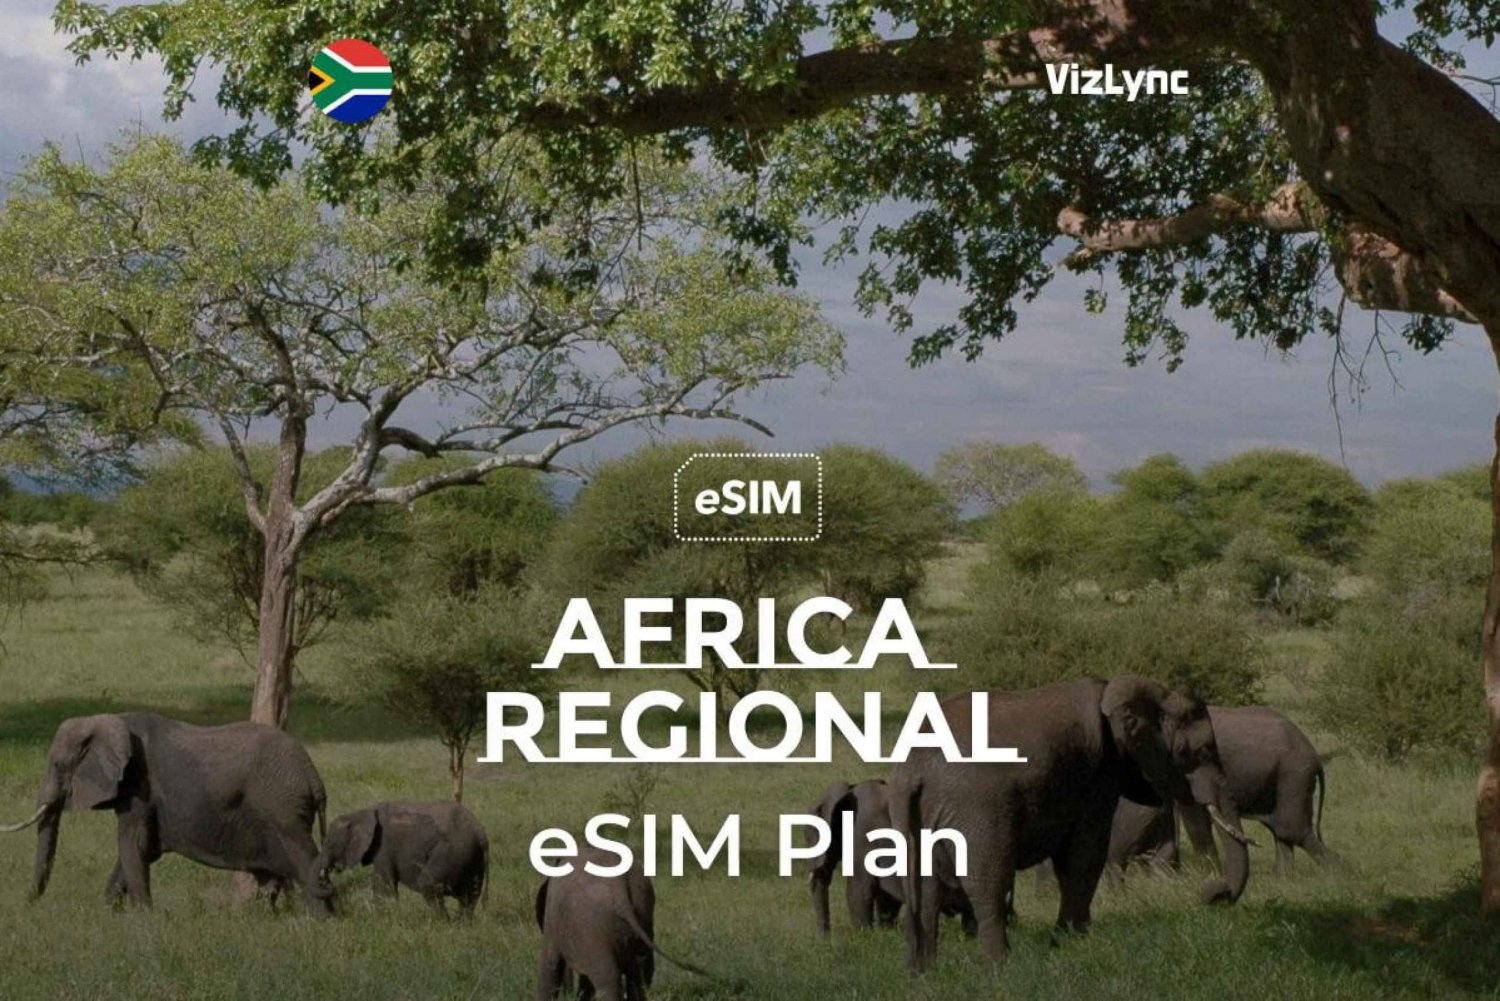 Bästa rese-eSIM för Afrika med 10 GB data i 30 dagar'